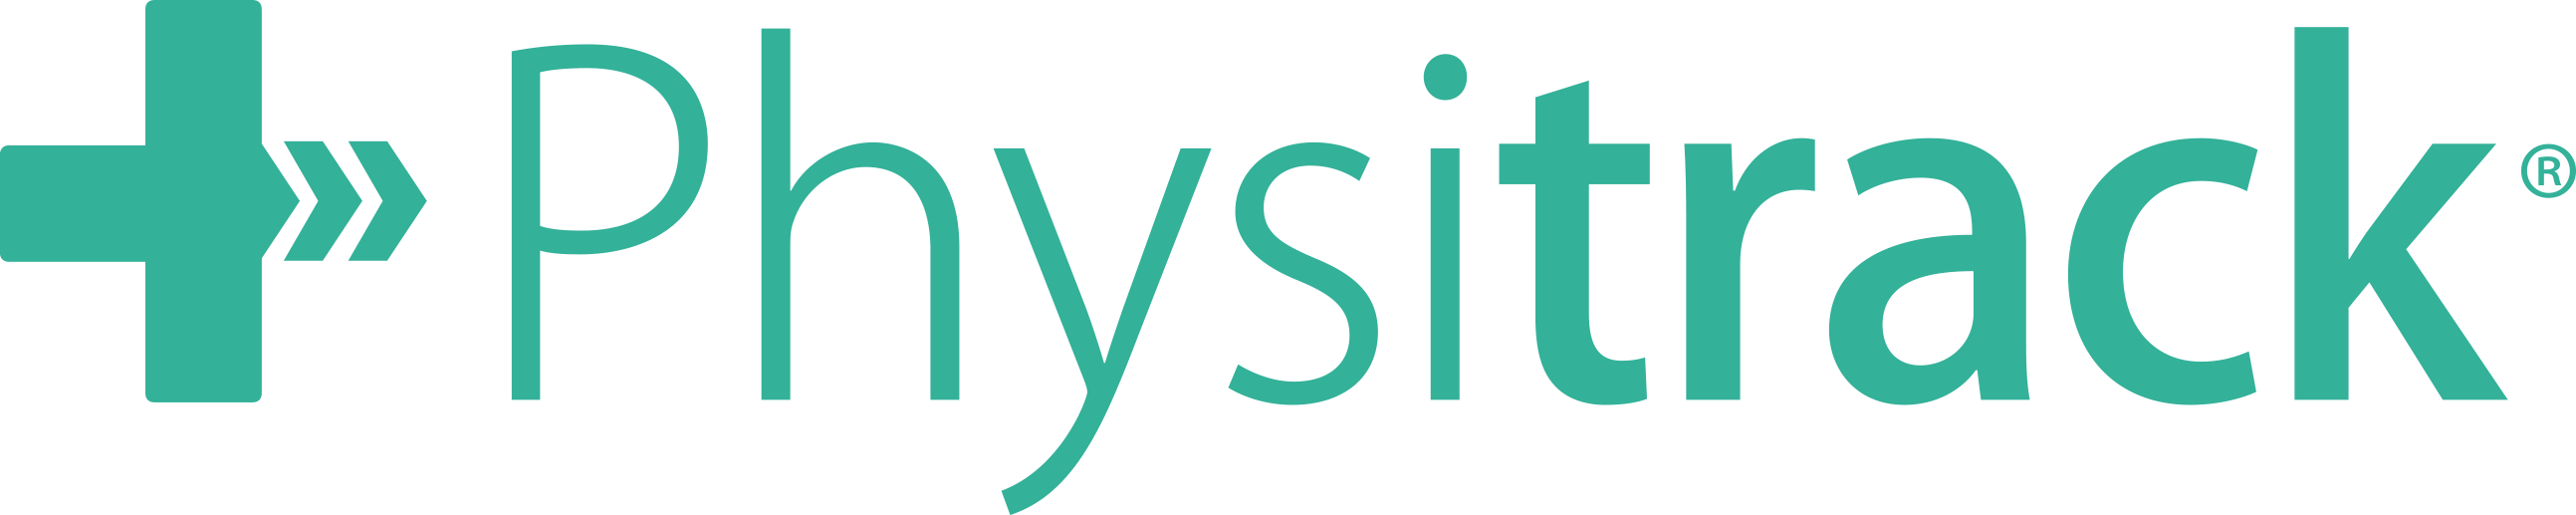 physitrack_logo (1)